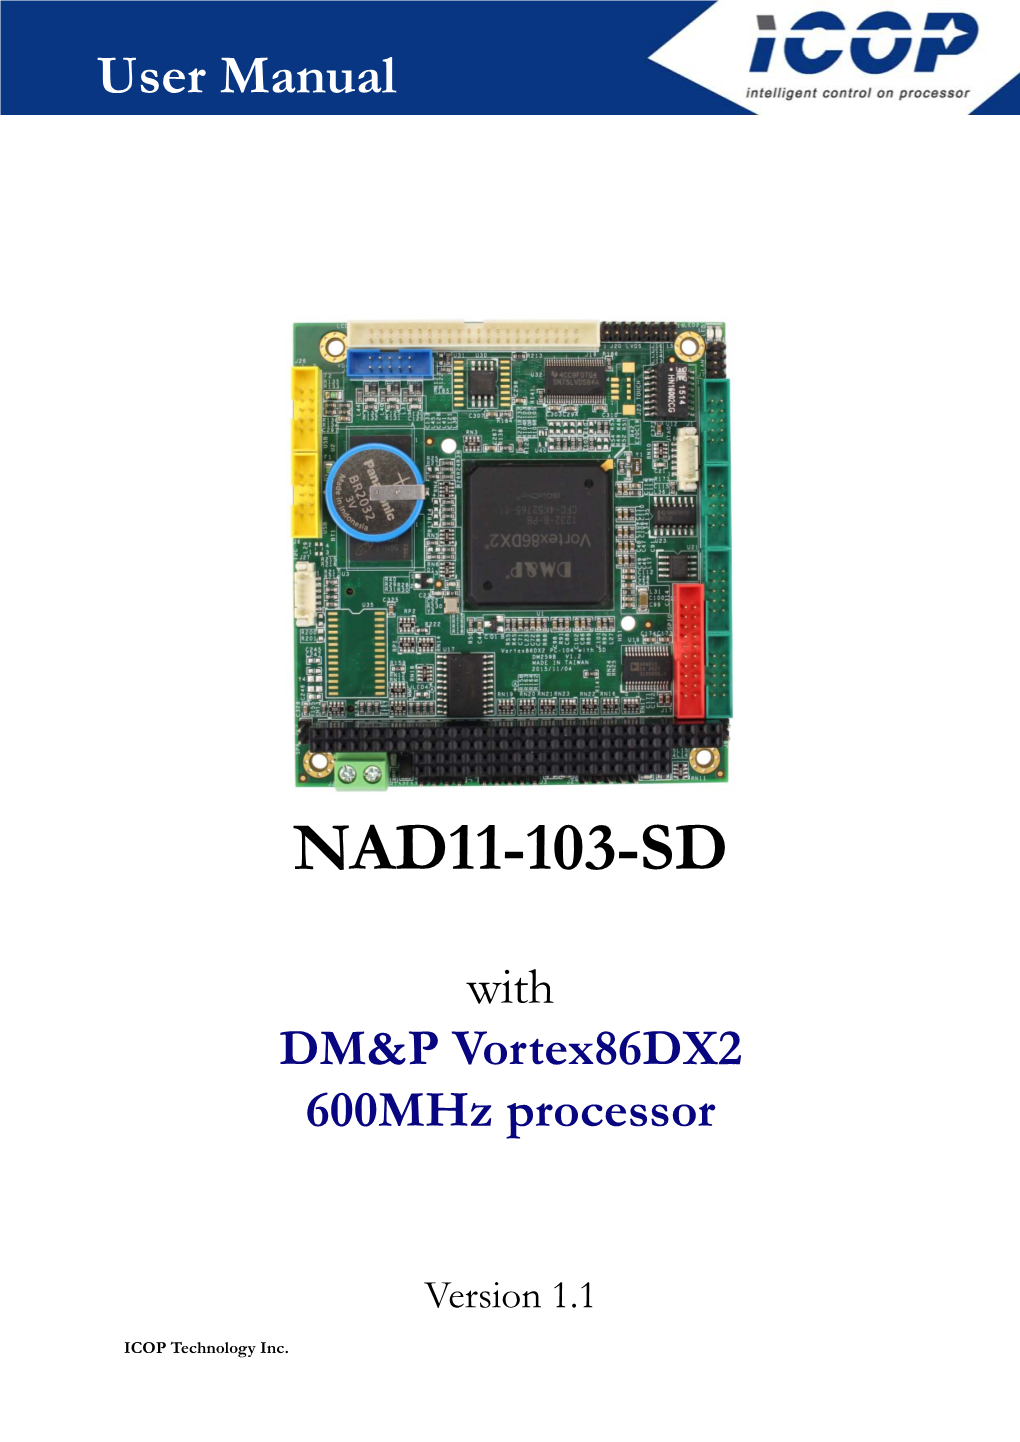 User Manual NAD11-103-SD